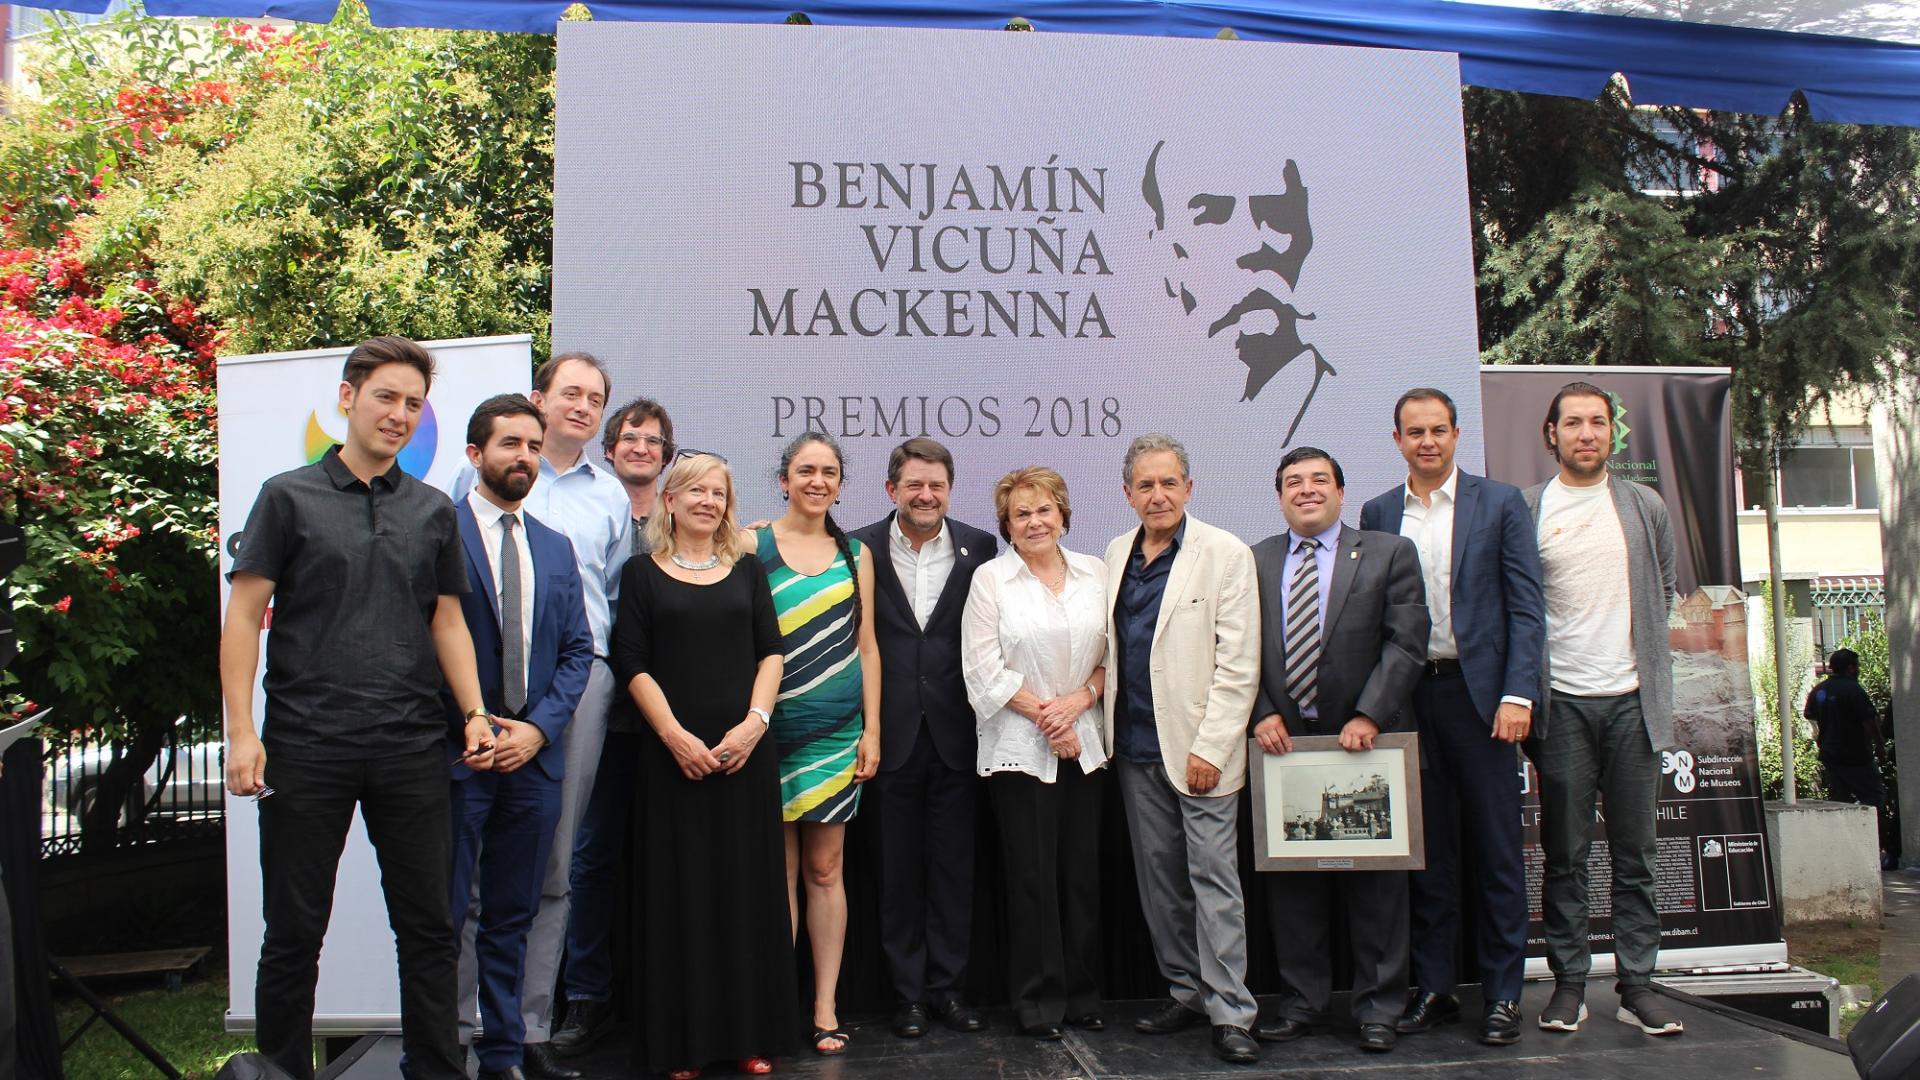 Intendente de la región Metropolitana y Director del Museo Benjamín Vicuña Mackenna junto a los galardonados.